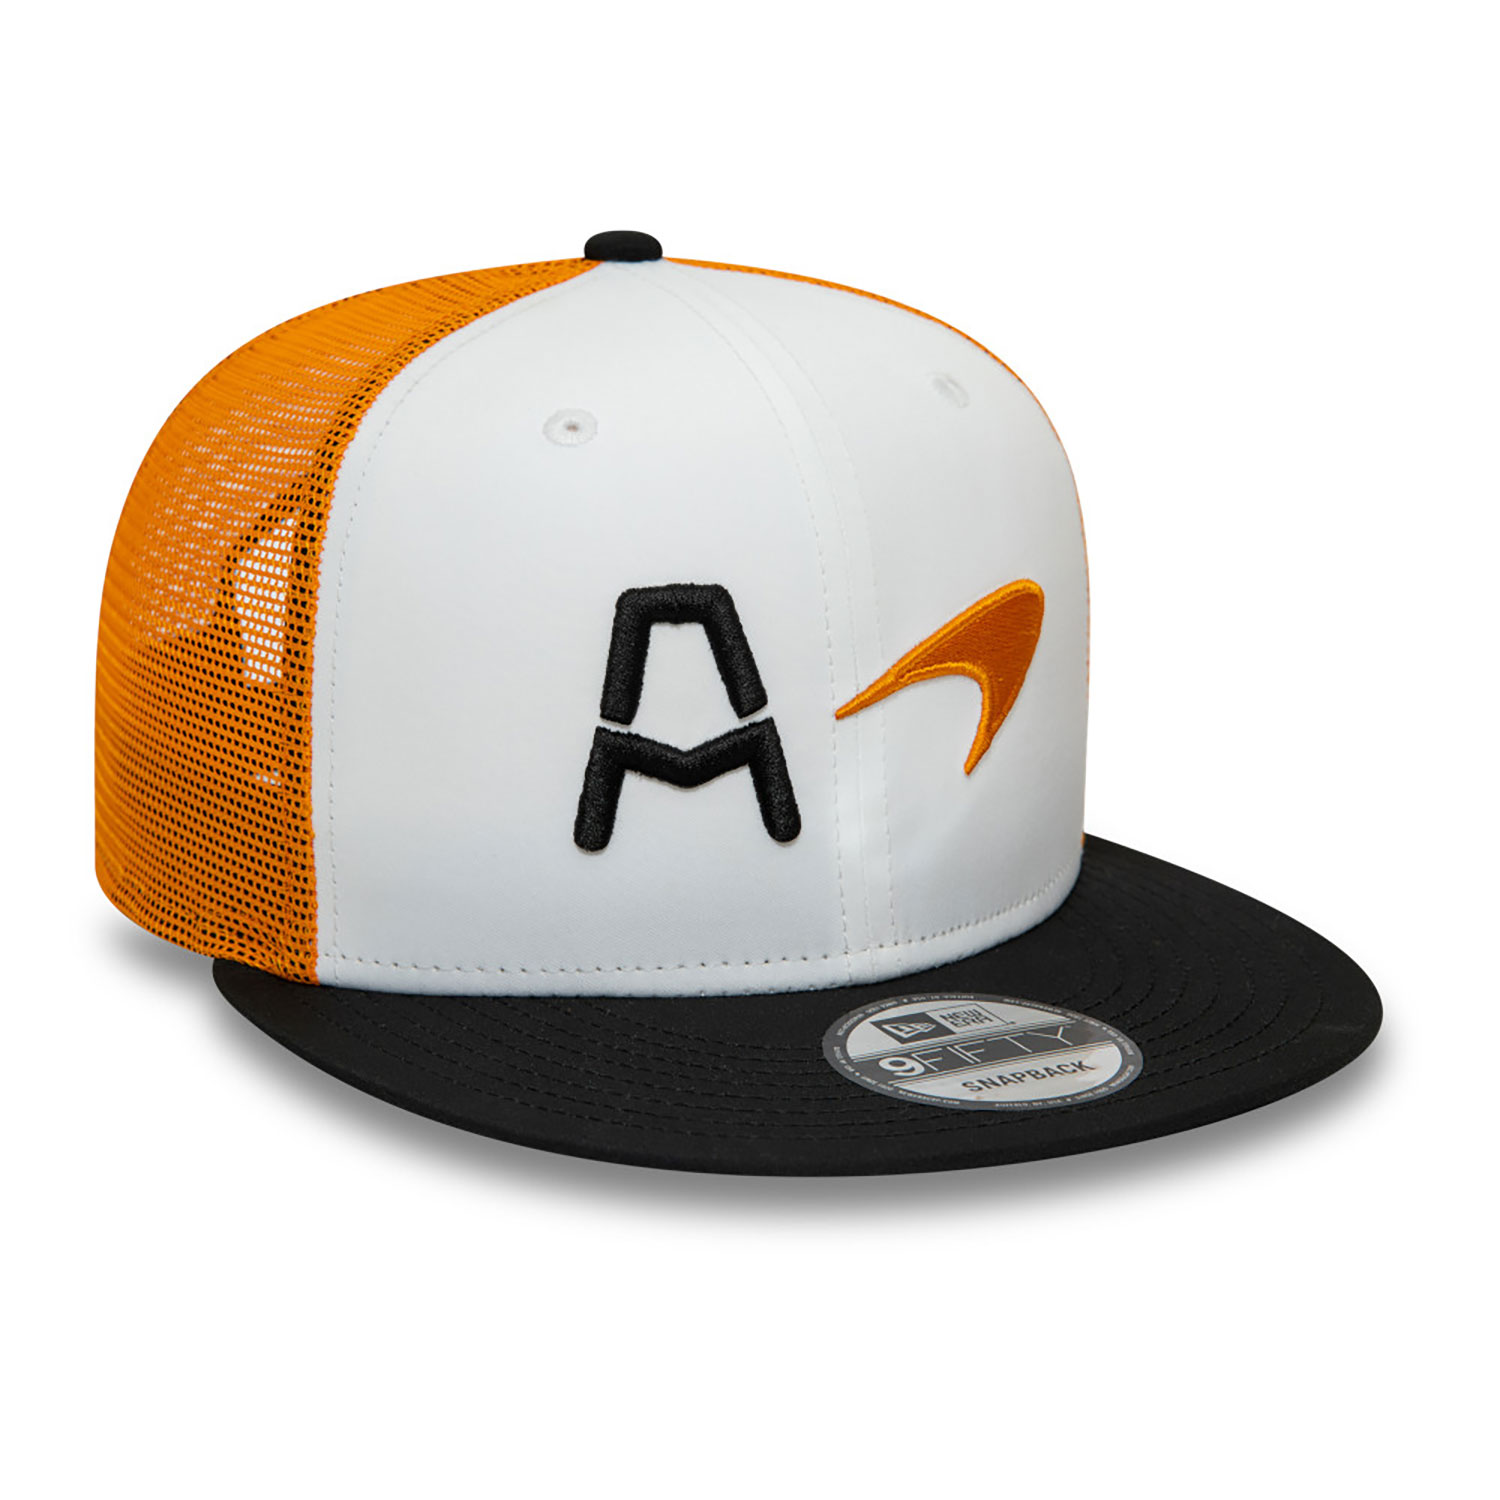 McLaren Racing Arrow Indycar Essential Orange 9FIFTY Snapback Cap